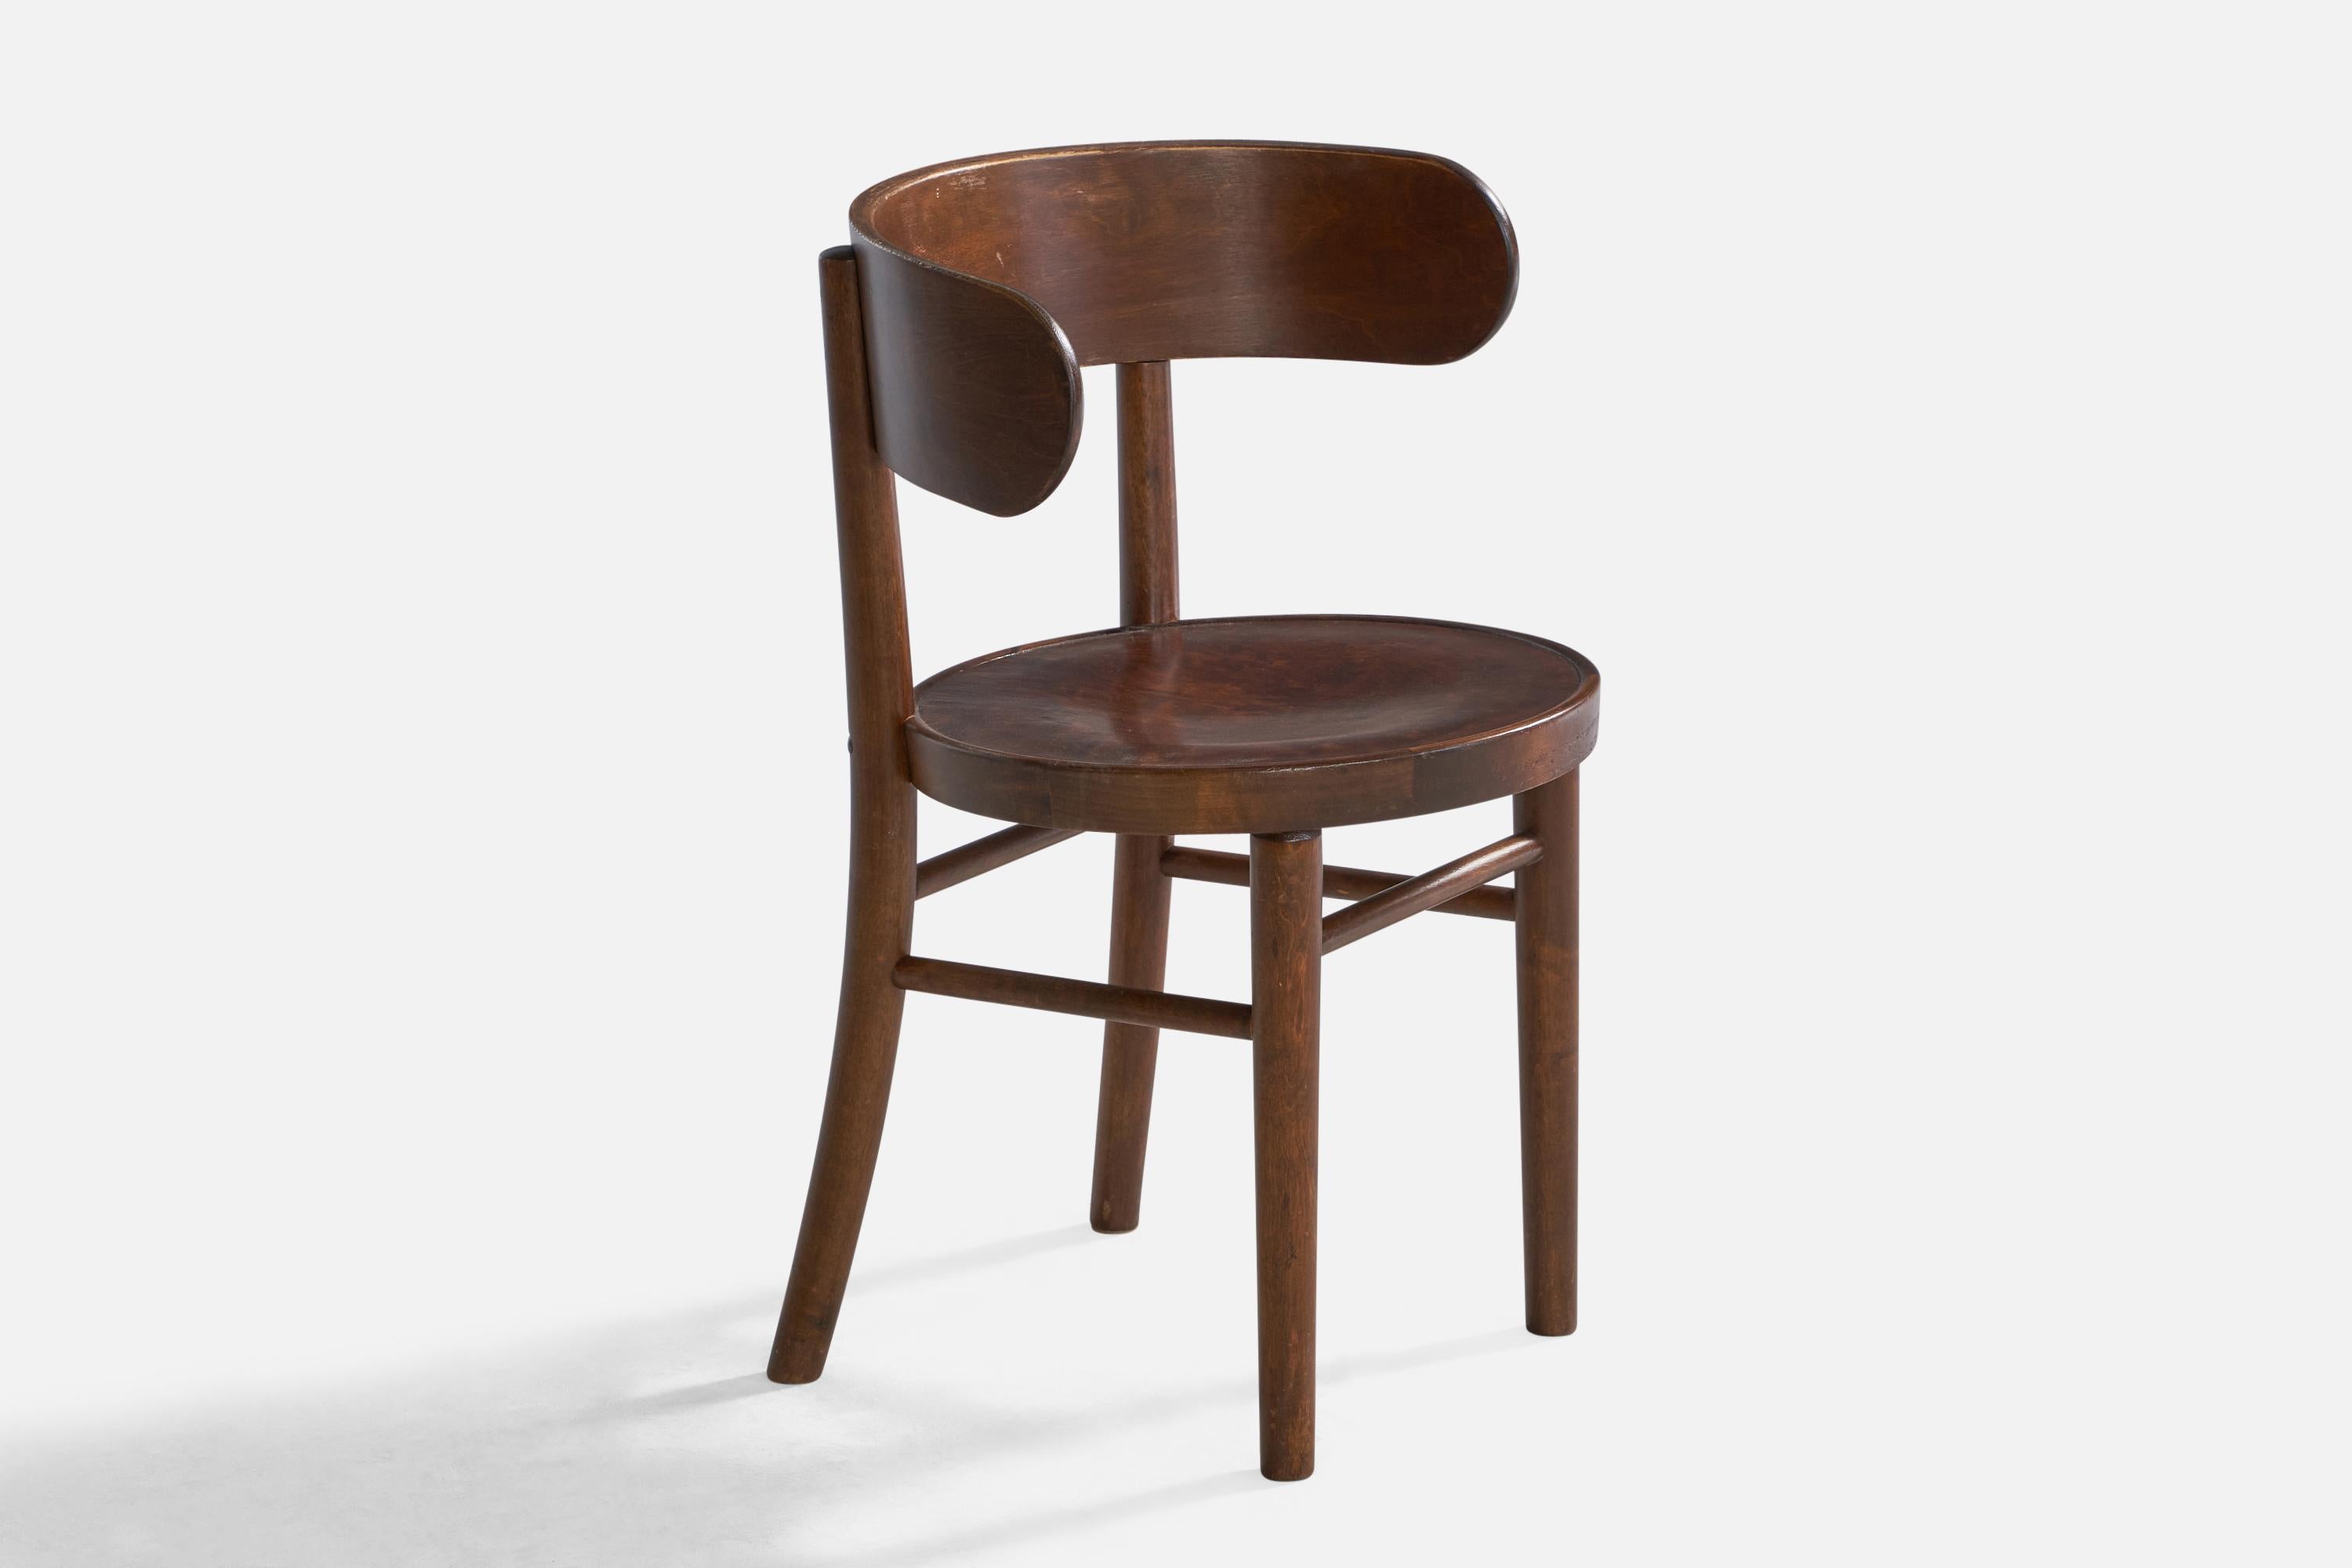 Chaise d'appoint en bois courbé teinté, conçue par Werner West et produite par Wilhelm Schauman Fanerfabrik AB, Jyväskylä, Finlande, années 1930.

Hauteur du siège : 17.38